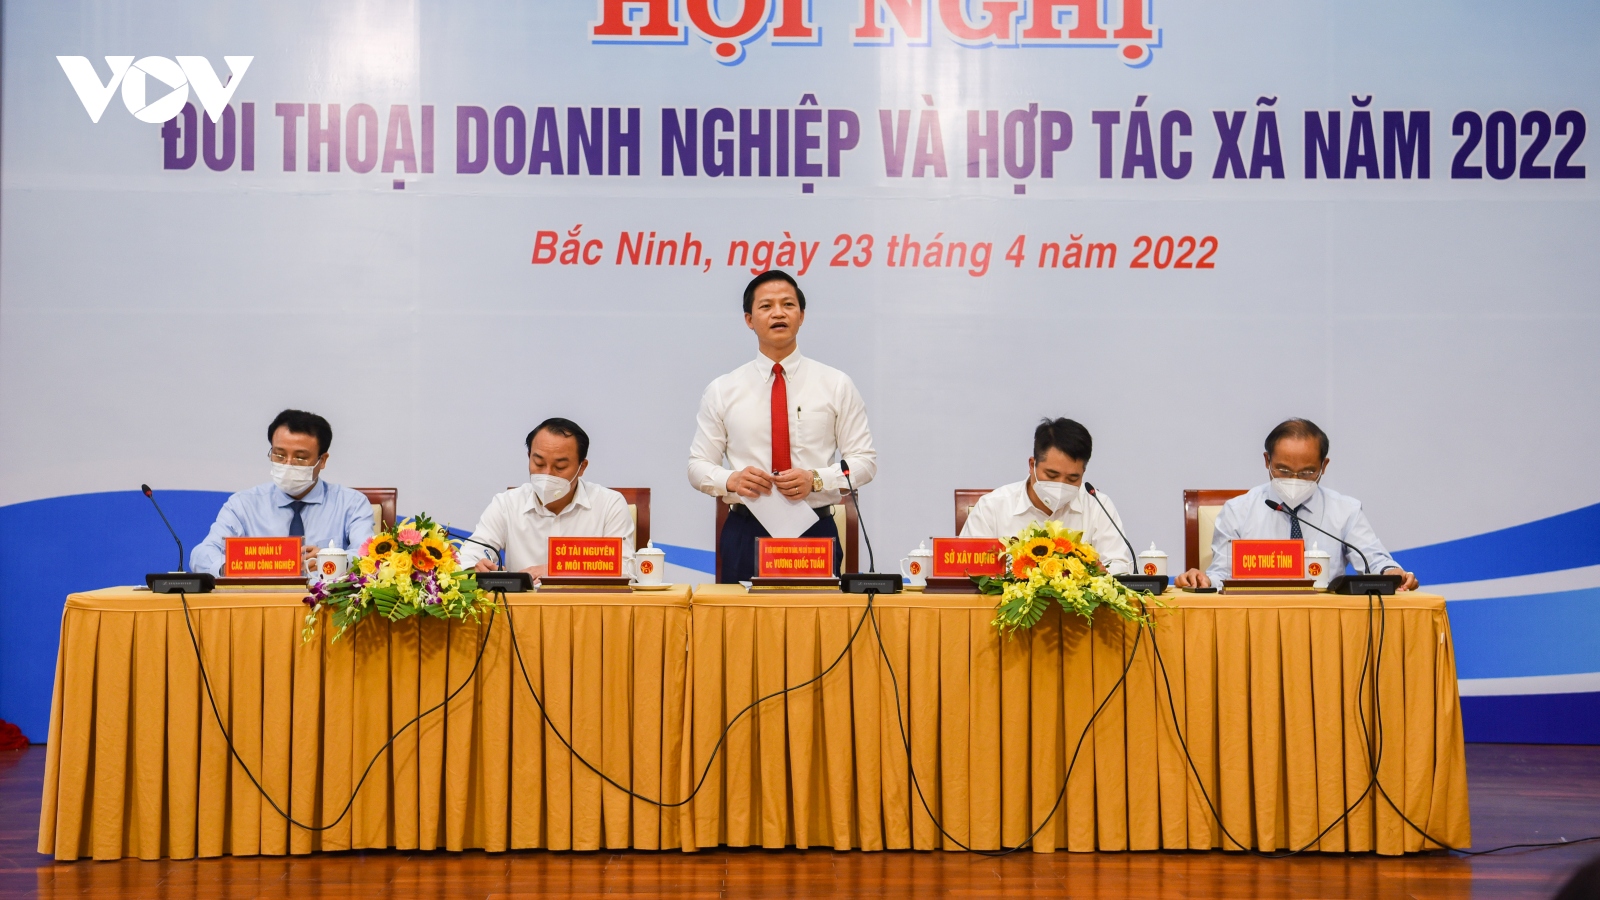 Bắc Ninh phát huy vai trò Tổ phản ứng nhanh “3 nhất” để hỗ trợ doanh nghiệp